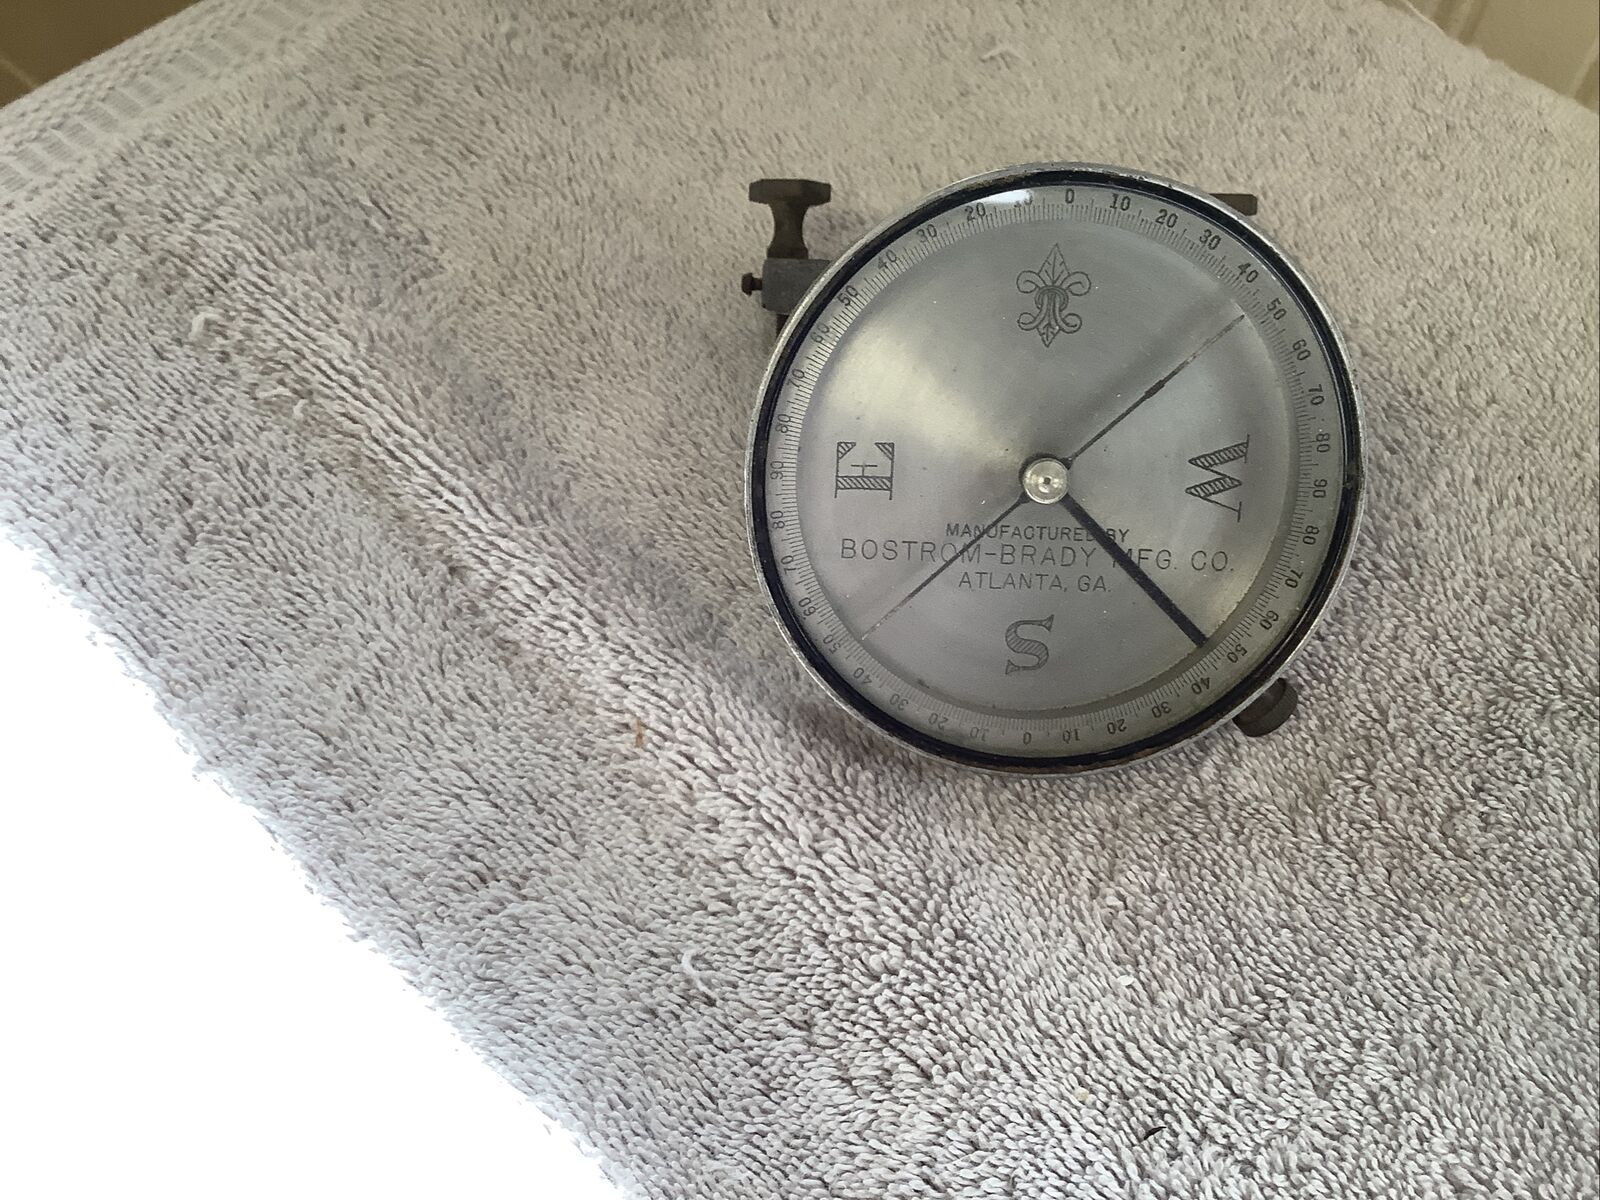 Bostrom-Brady MFG. Co. Atlanta GA. mountable compass used might be aluminum